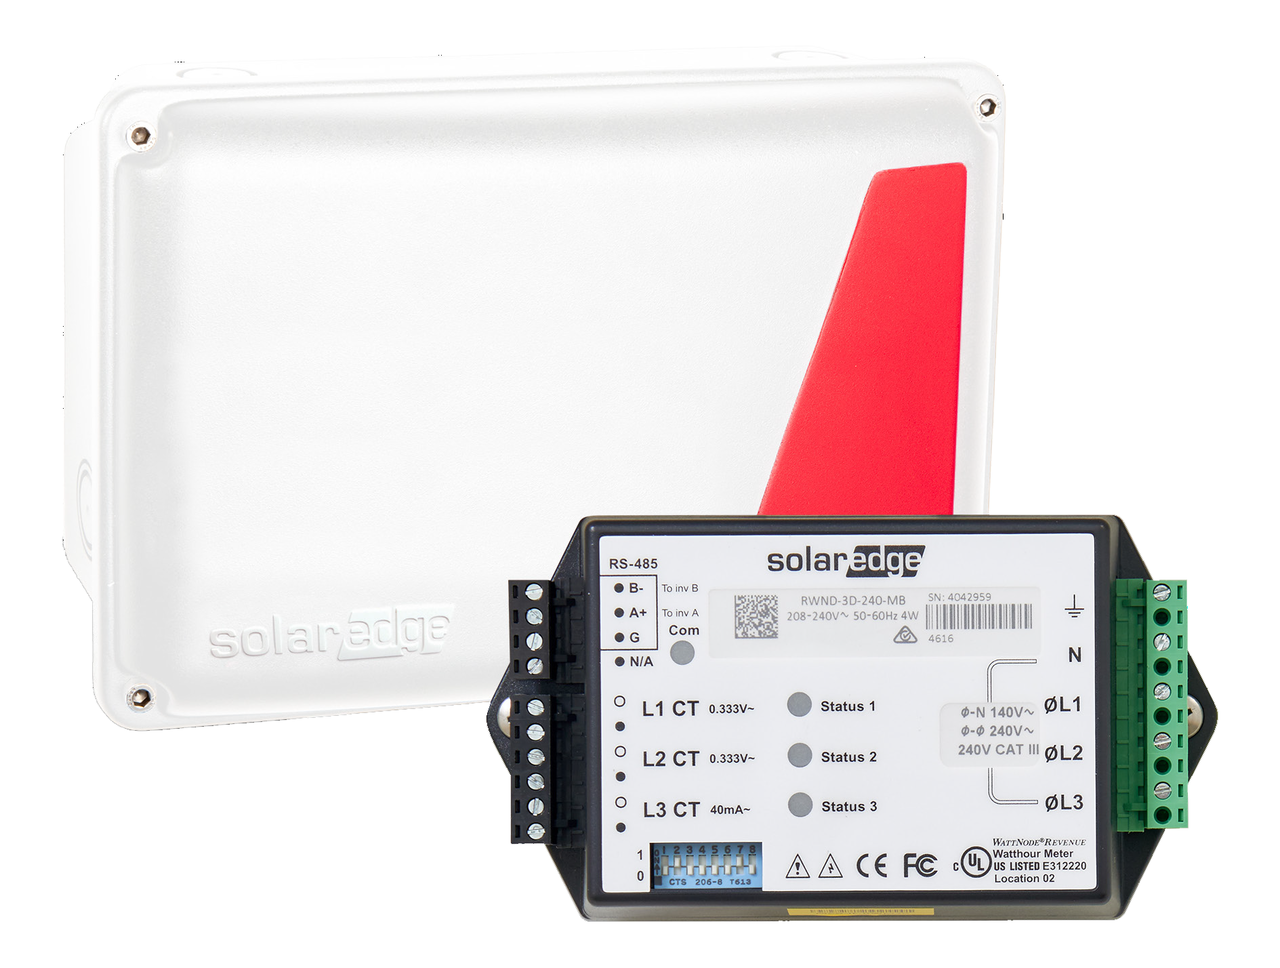 Solaredge SE1000-DTLG-S1 Communications Gateway